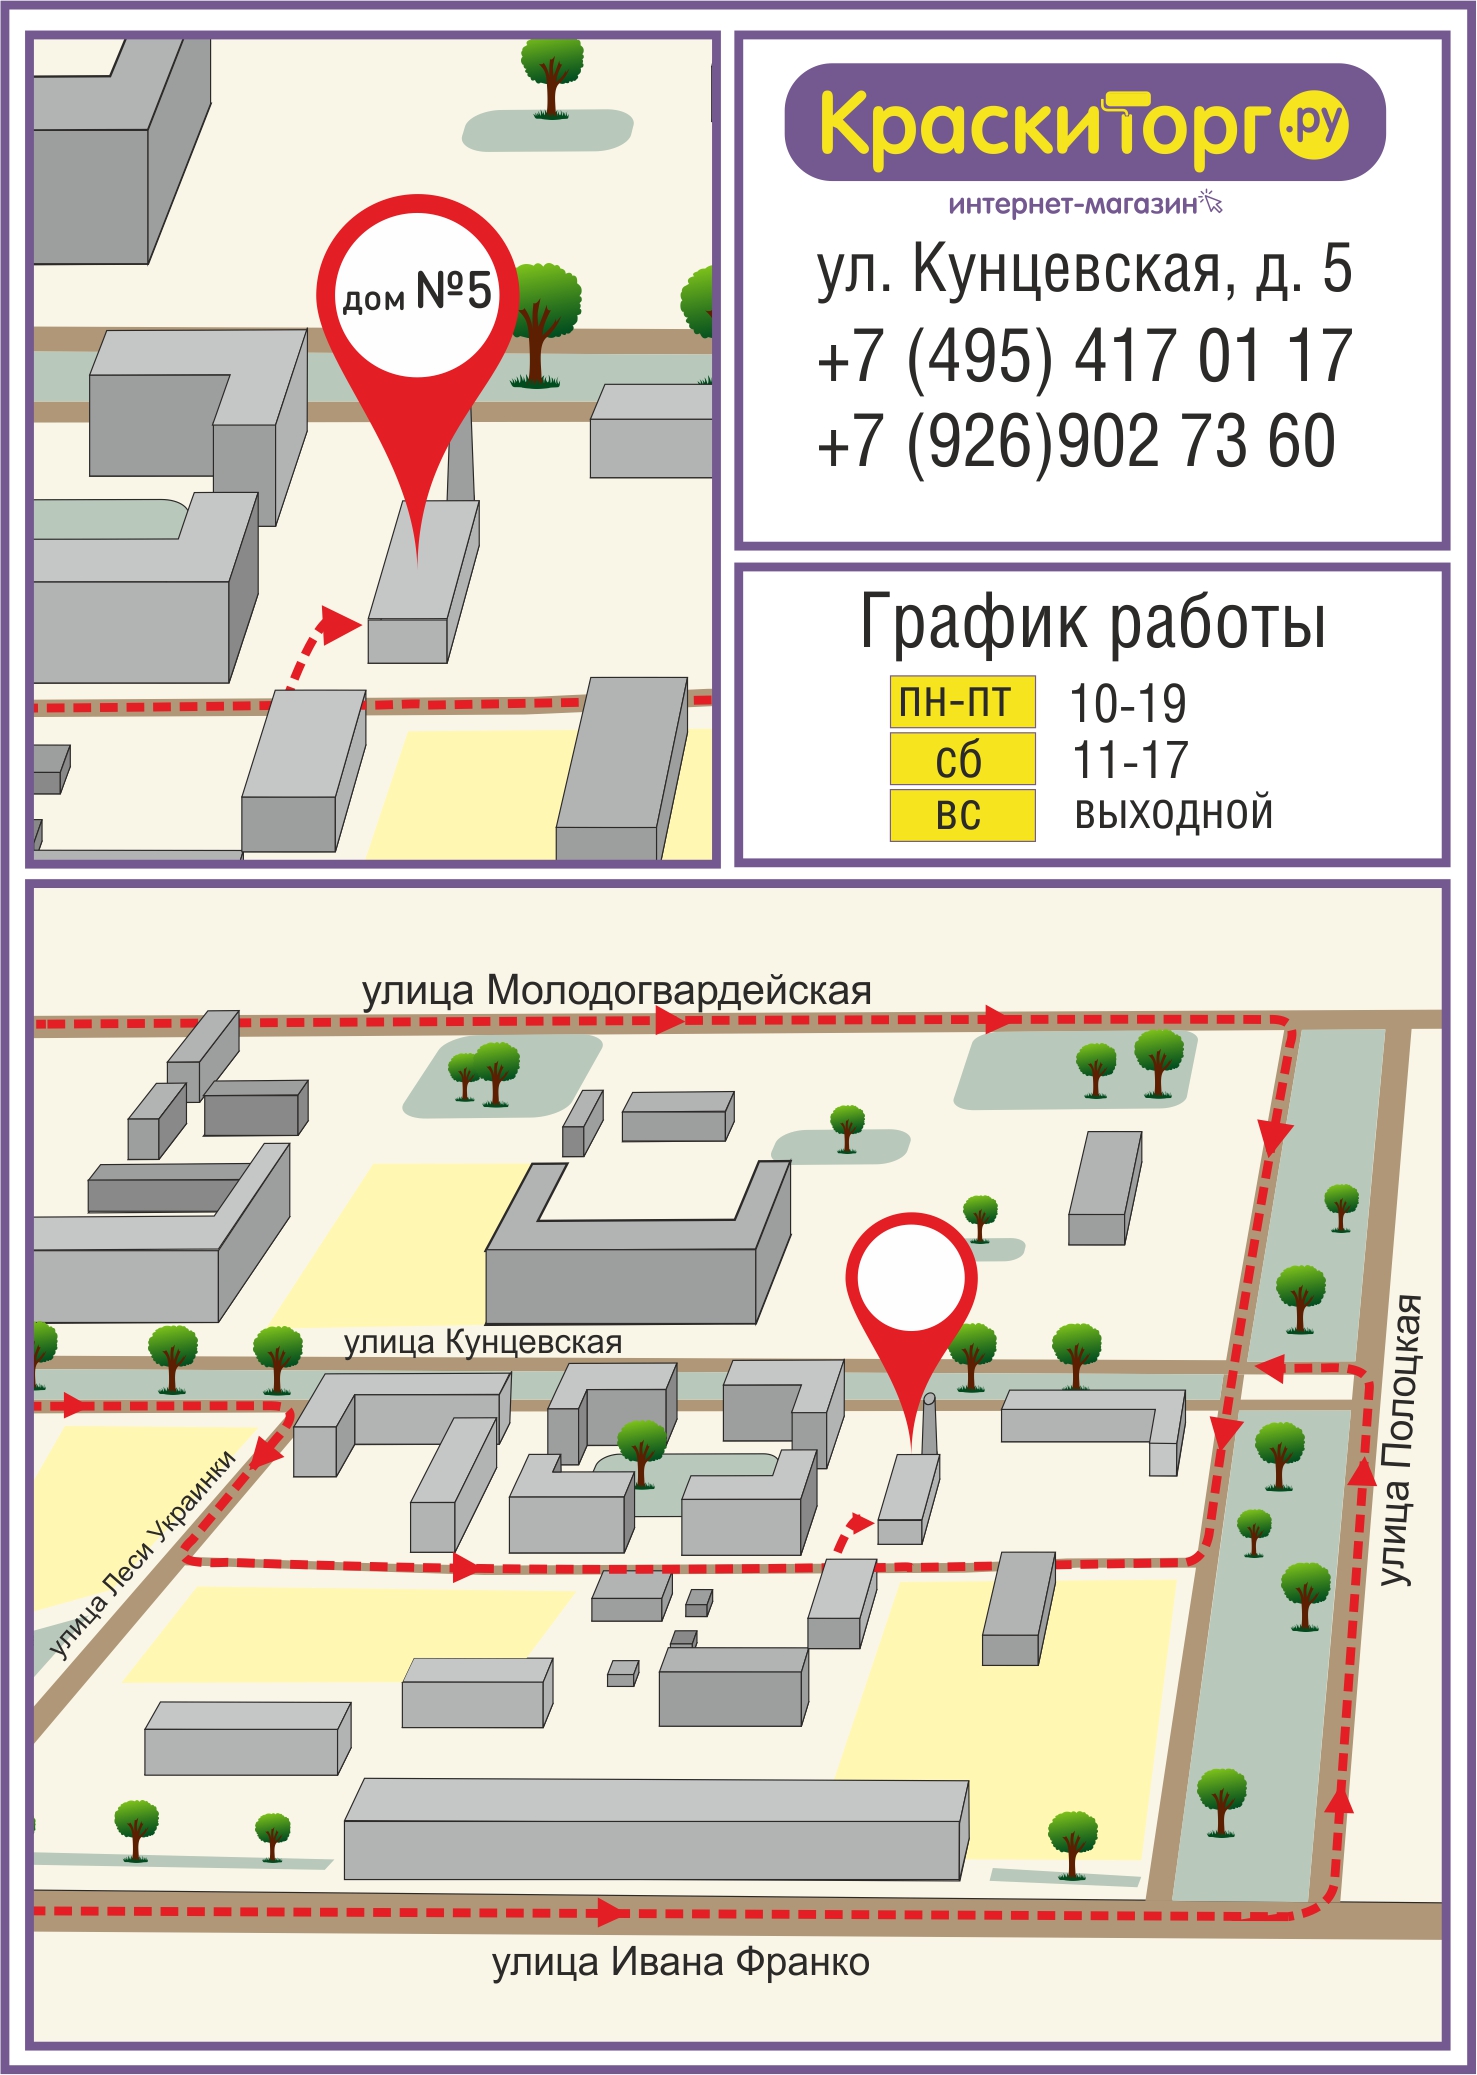 Схема проезда к магазину на  Кунцевская, д. 5